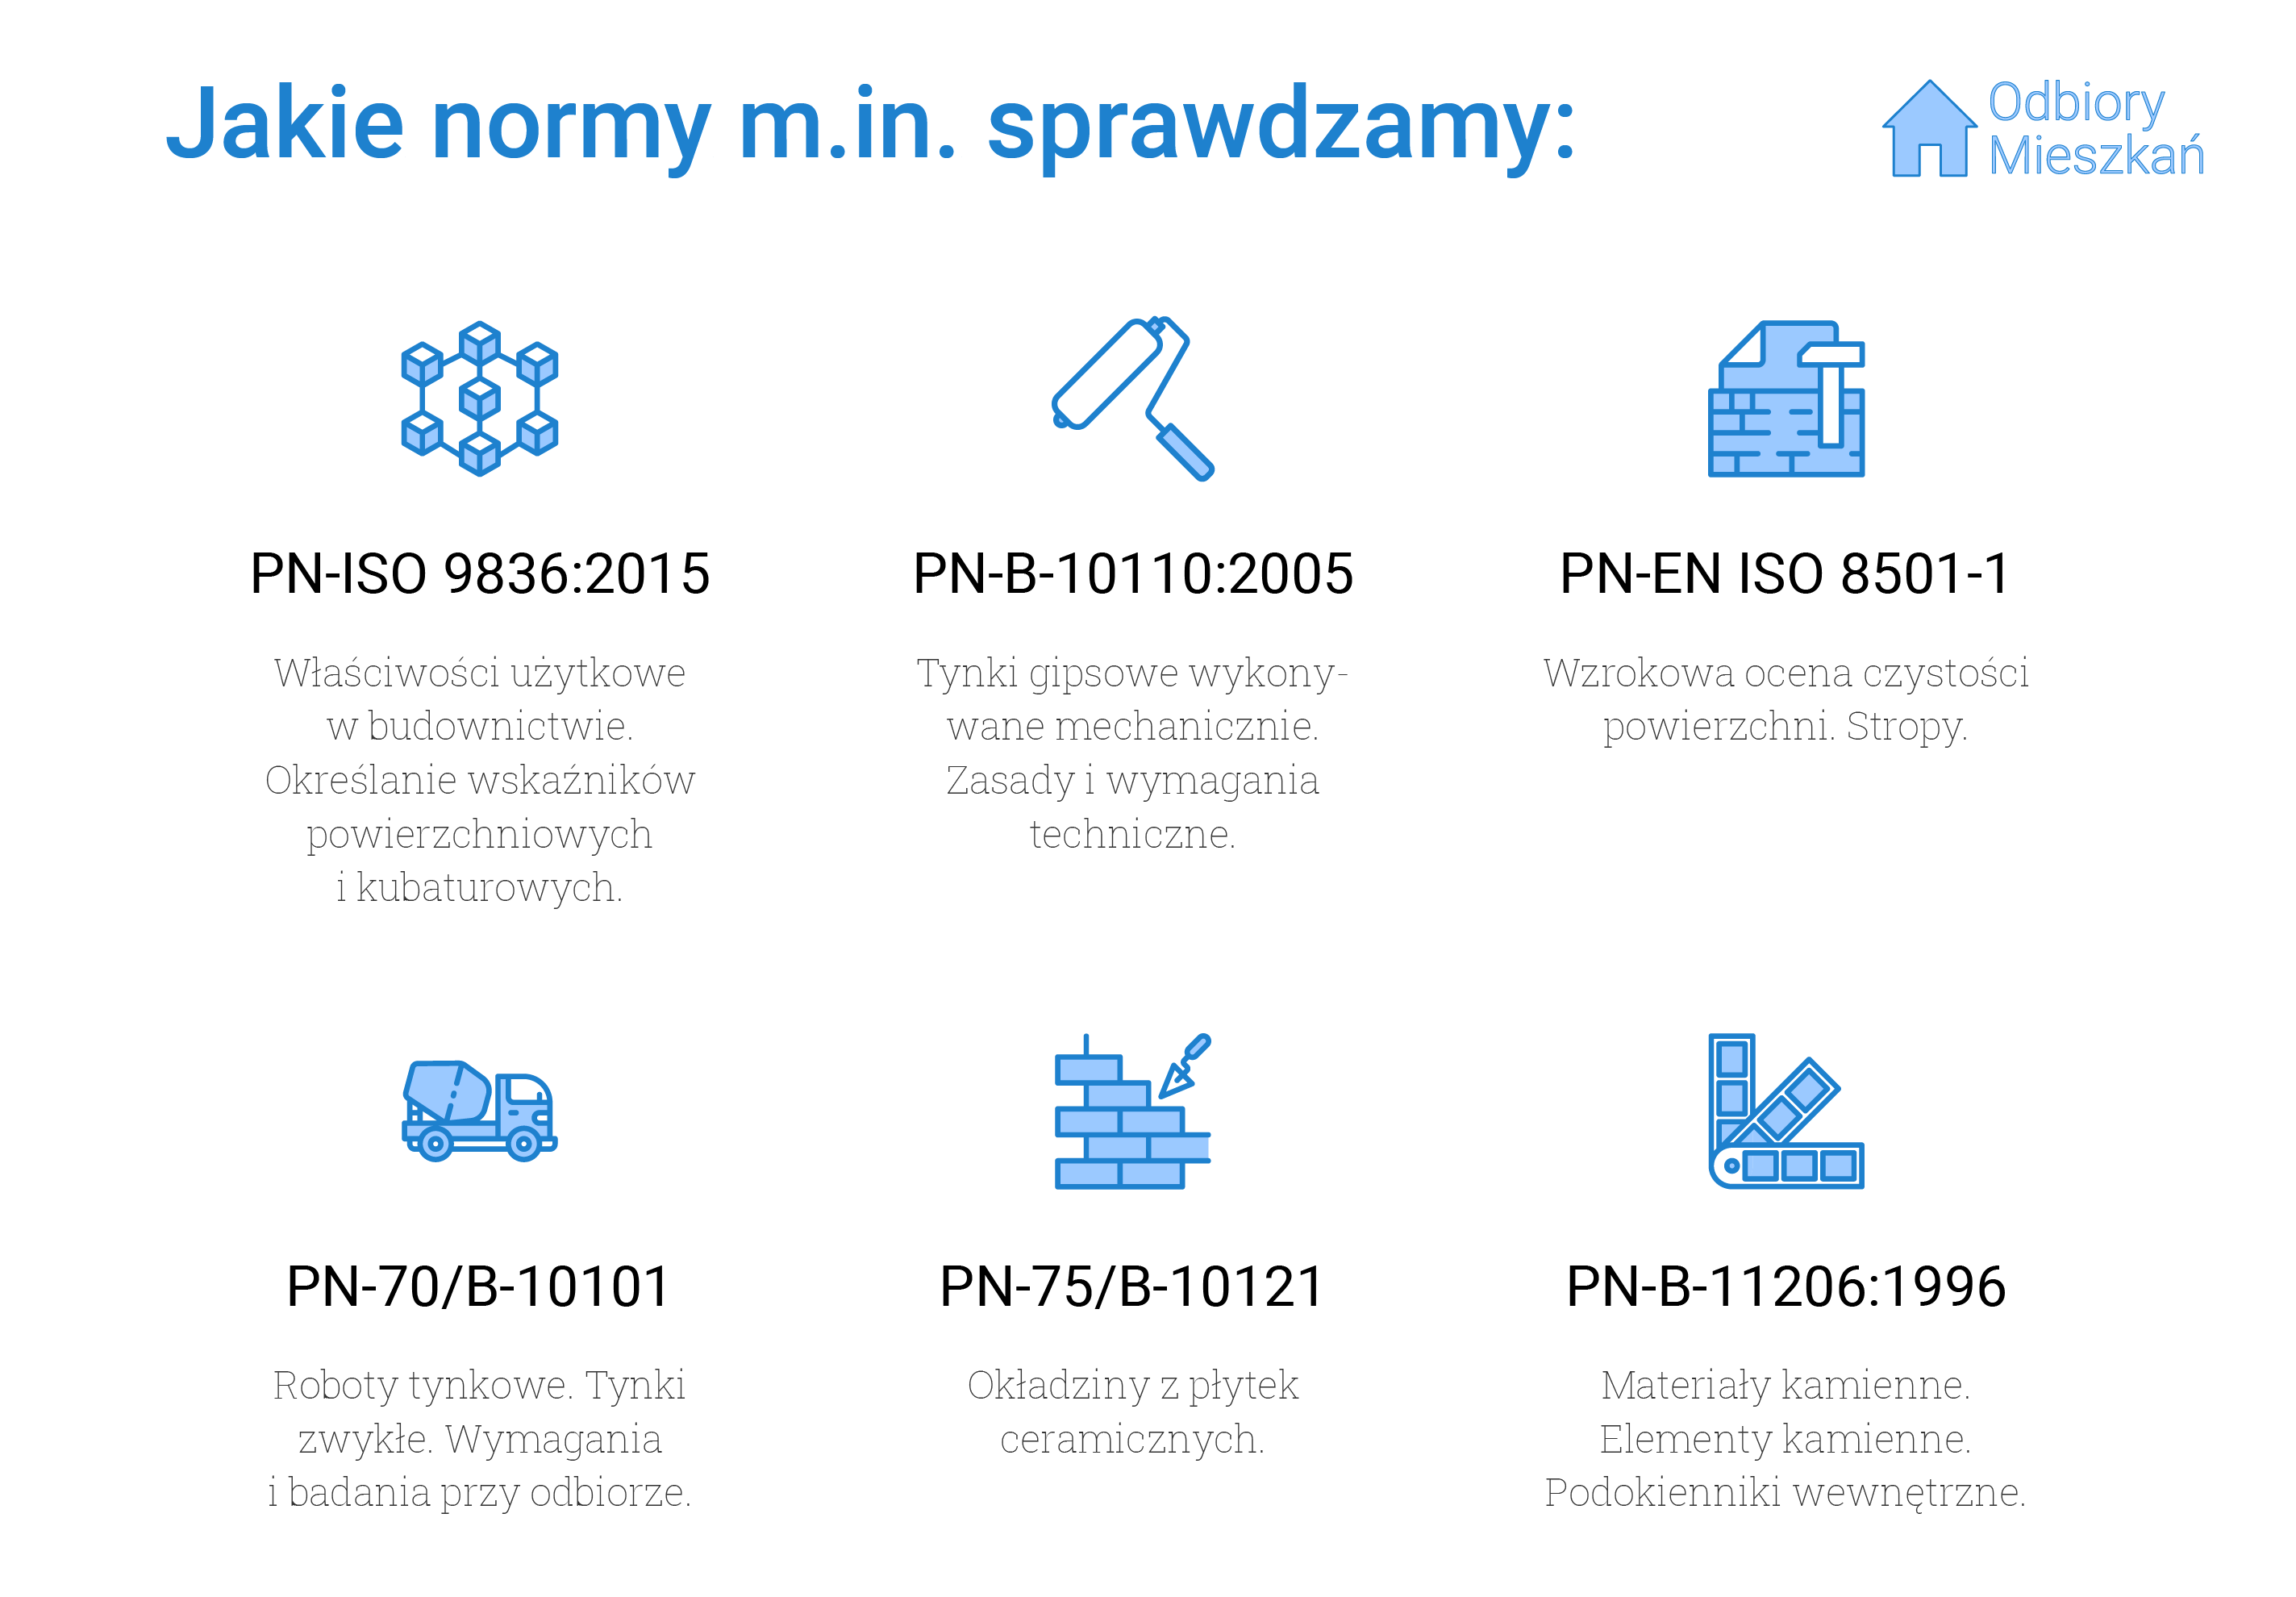 Normy, jakie sprawdzamy podczas odbioru technicznego w Bydgoszczy: PN-ISO 9836:2015 - właściwości użytkowe w budownictwie i określanie wskaźników powierzchni kubaturowych, PN-B-10110:2005 - tynki gipsowe wykonywane mechanicznie oraz zasady i wymagania techniczne wykonywania tynków, PN-EN ISO 8501-1, czyli wzrokowa ocena czystości powierzchni oraz stropy, PN-70/B-10101 - roboty tynkowe, tynki zwykłe oraz wymagania przy odbiorze tynków, PN-75/B10121, czyli okładziny z płytek ceramicznych oraz PN-B-11206:1996, czyli materiały i elementy kamienne oraz podokienniki wewnętrzne.